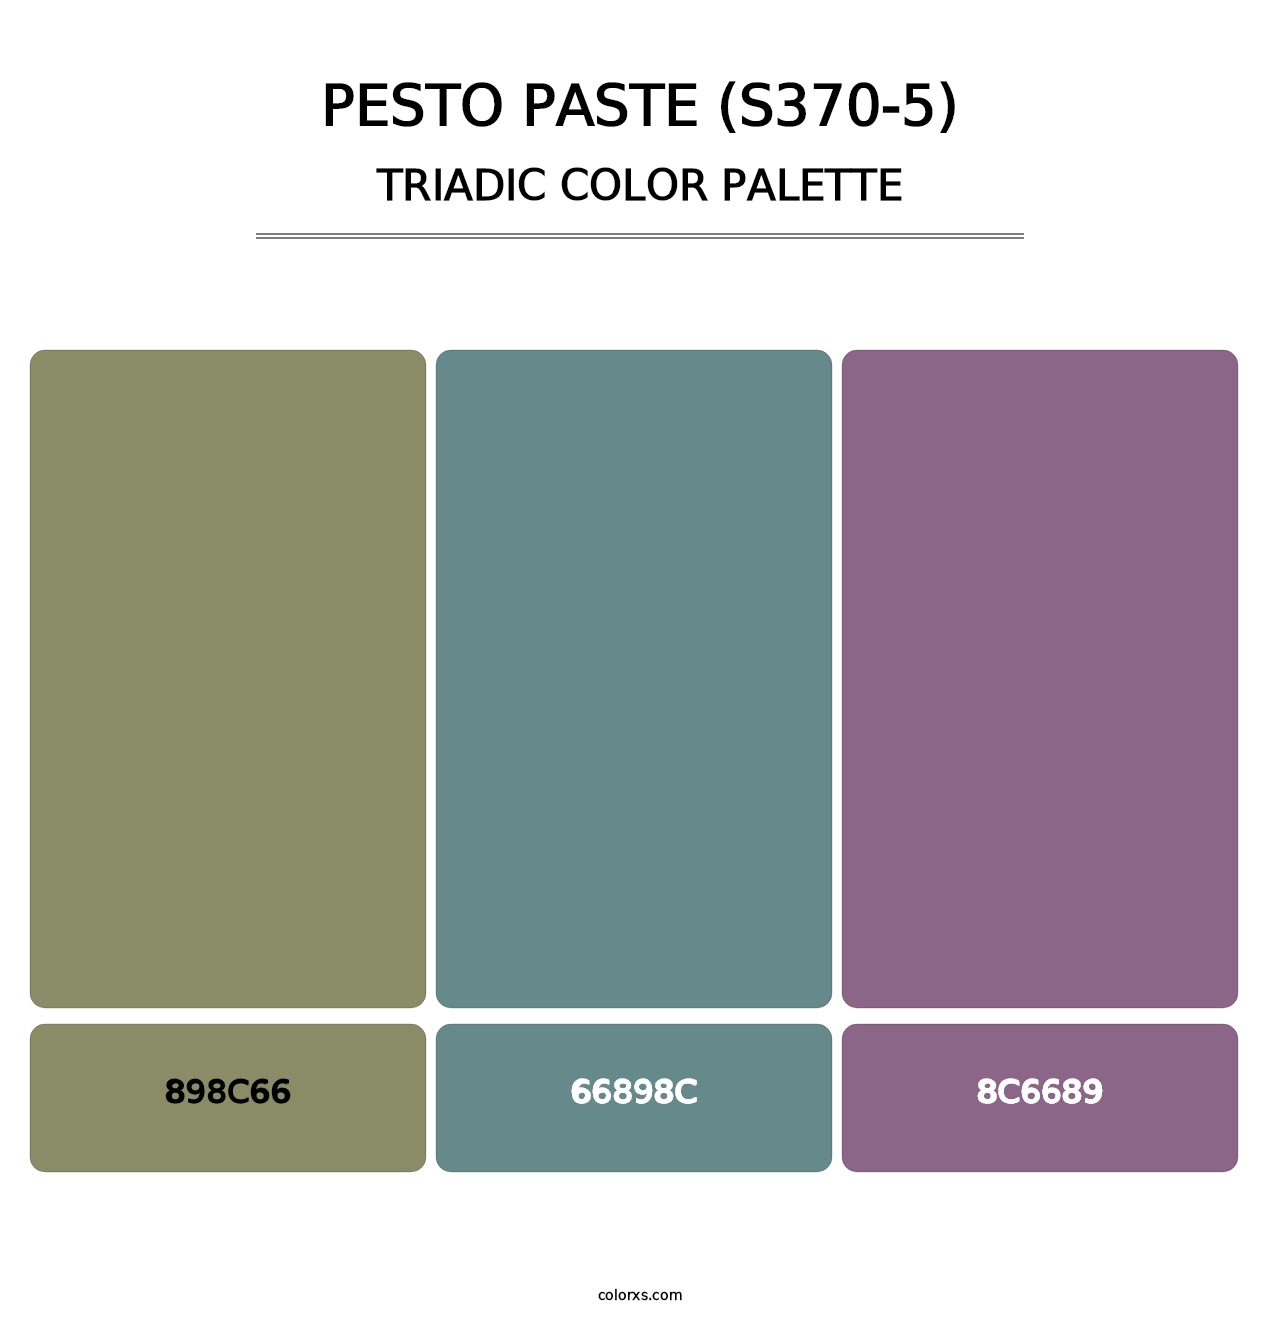 Pesto Paste (S370-5) - Triadic Color Palette